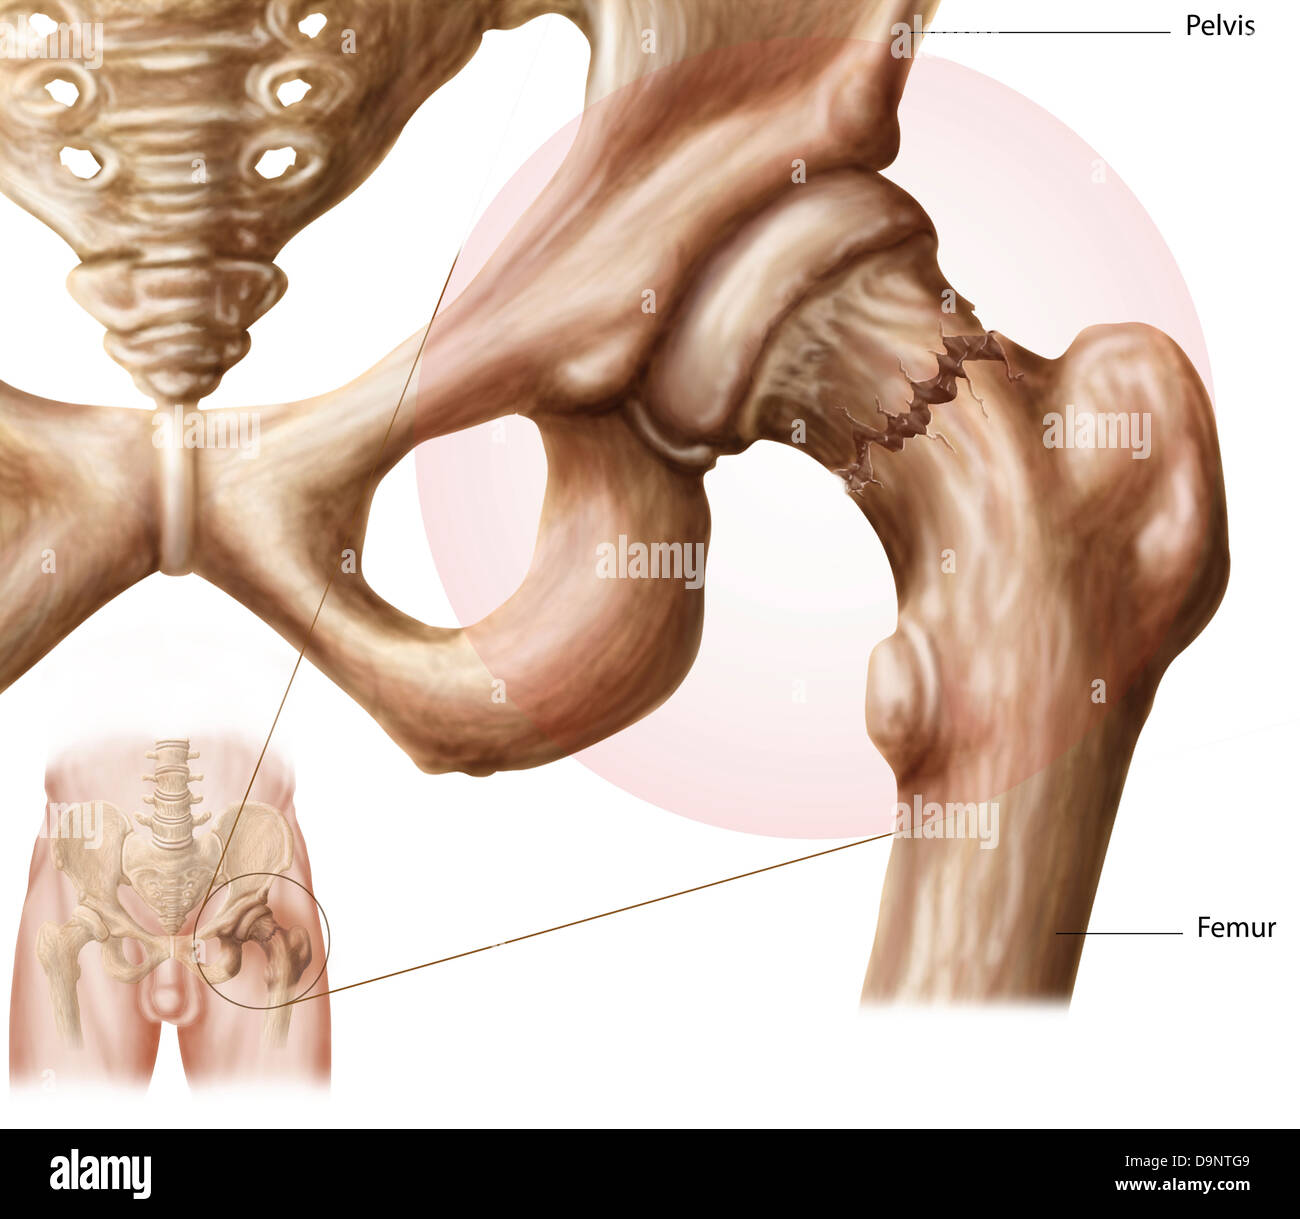 Anatomia di frattura dell'anca. Foto Stock